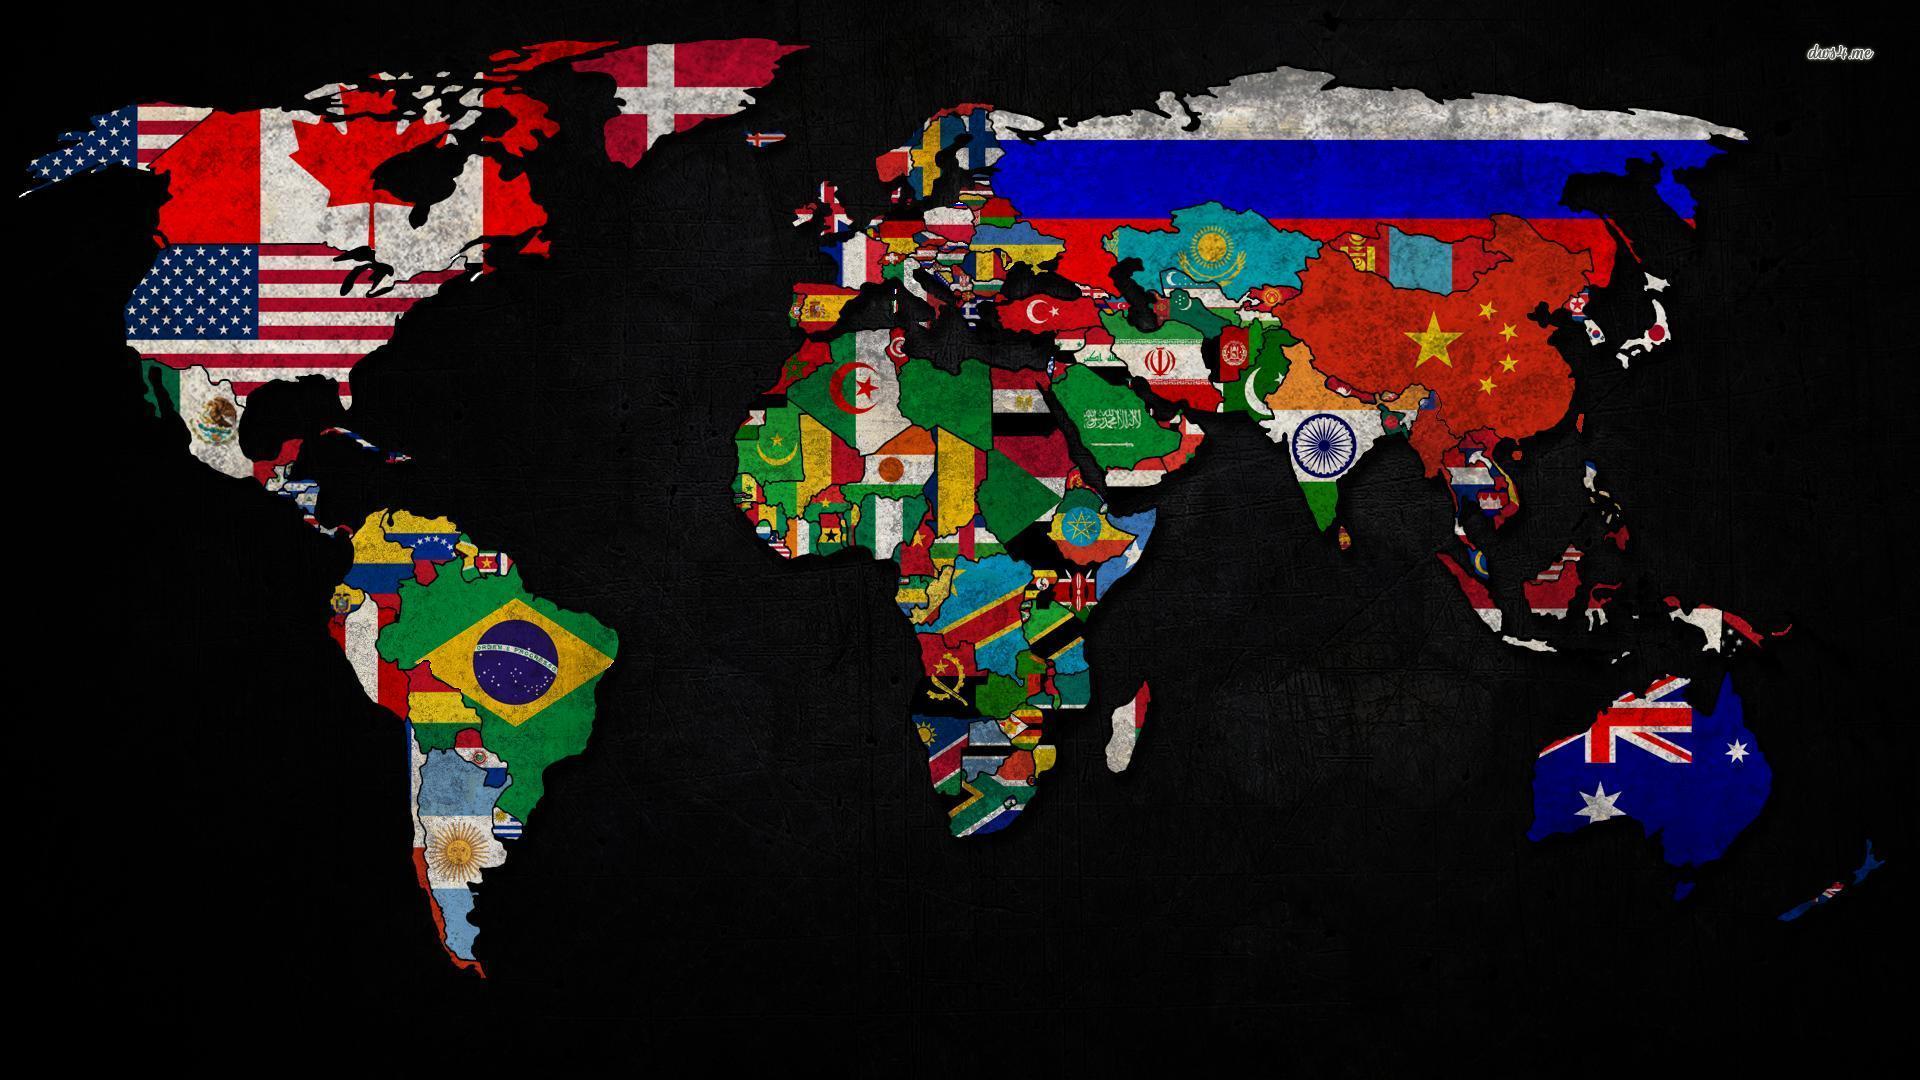 World Map Wallpaper, Best & Inspirational High Quality World